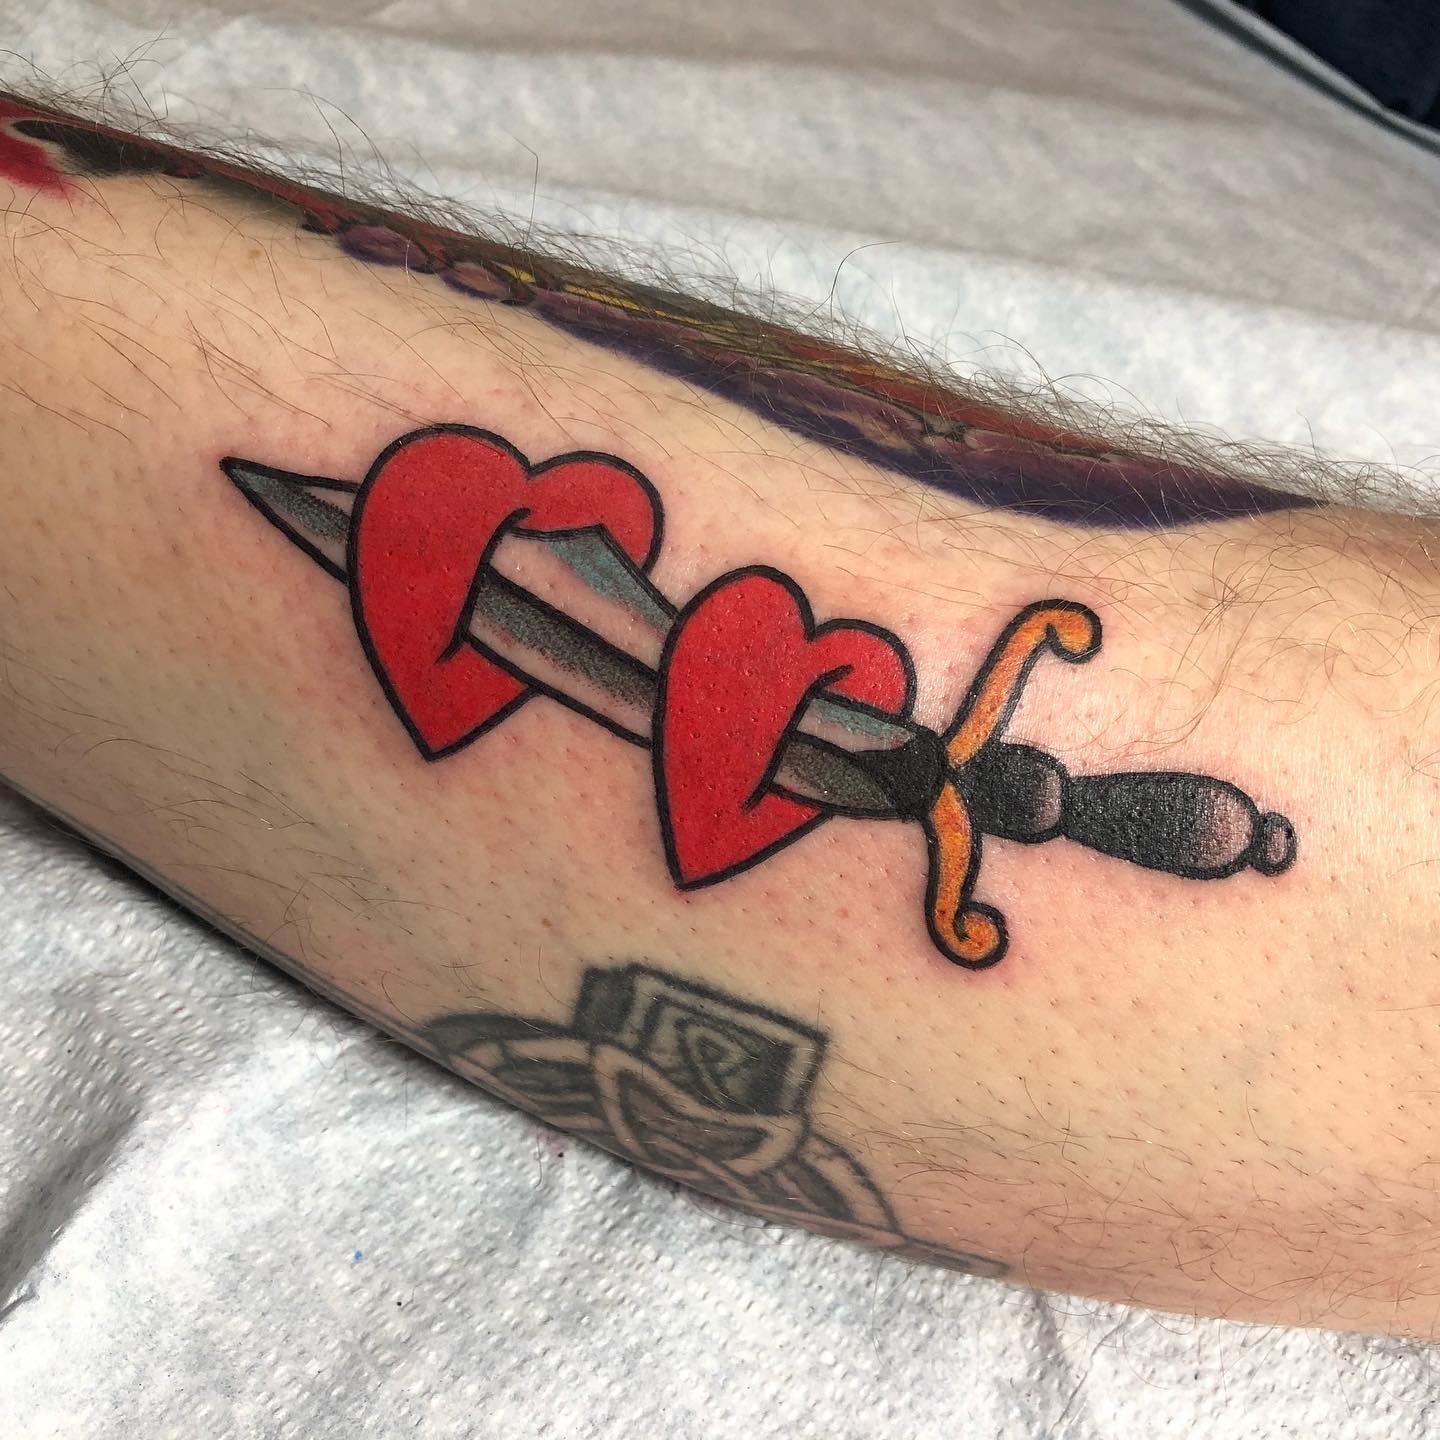 heart tattoo with dagger 27122019 009 dagger tattoo tattoovaluenet   tattoovaluenet